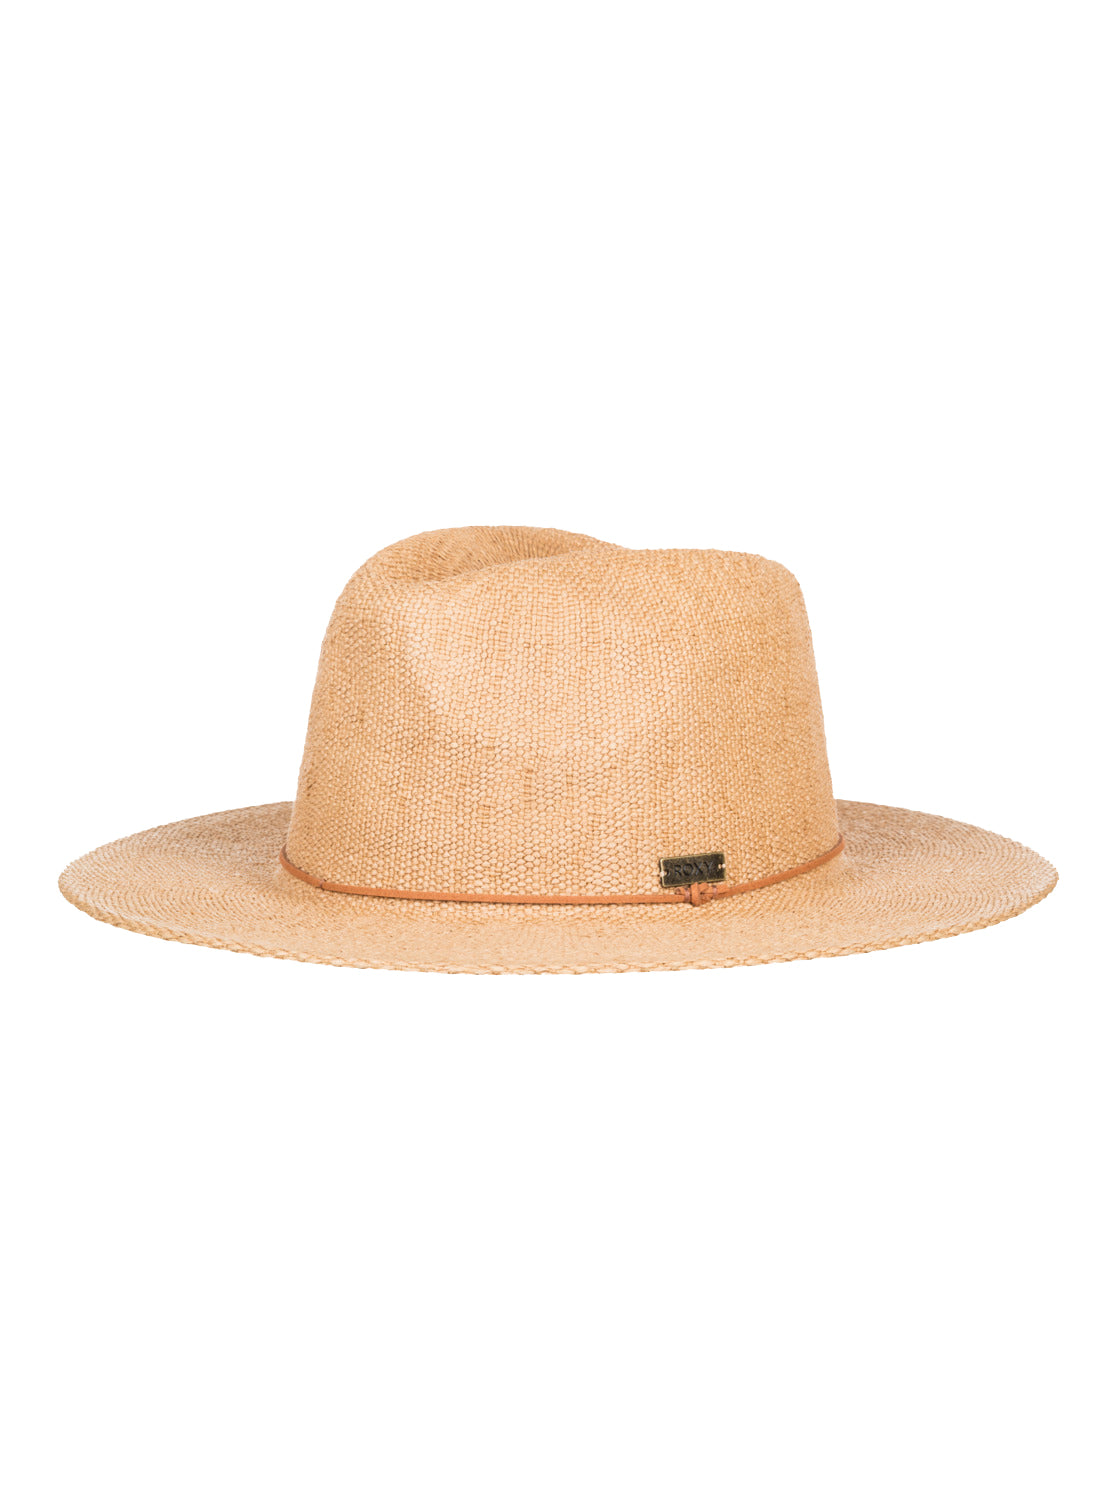 Roxy Early Sunset Panama Hat YEF0 M/L